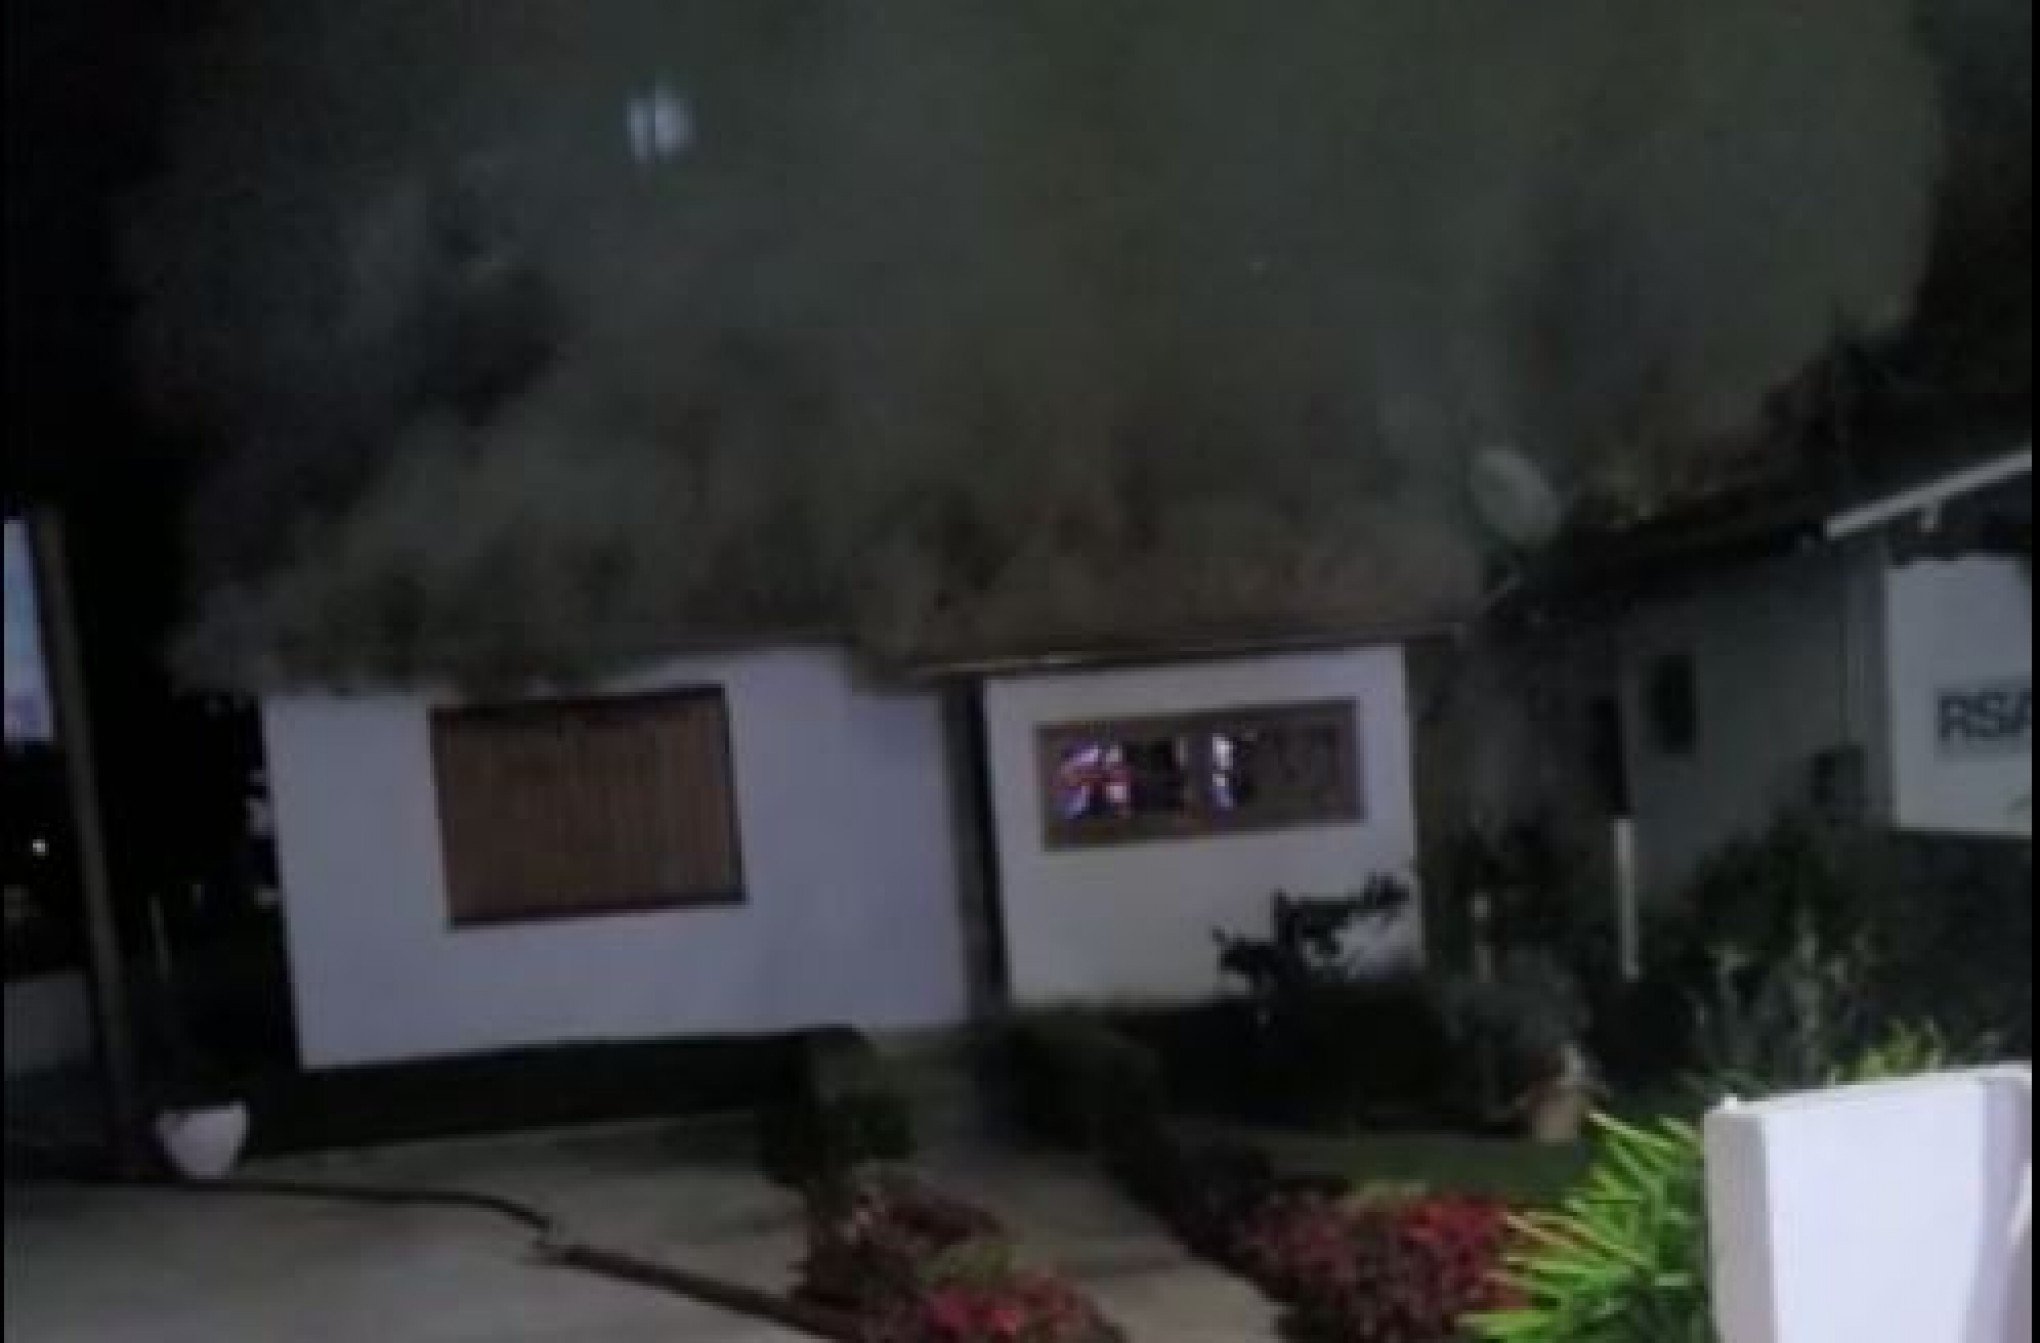 VÍDEO: Incêndio atinge casa no Centro de Canela